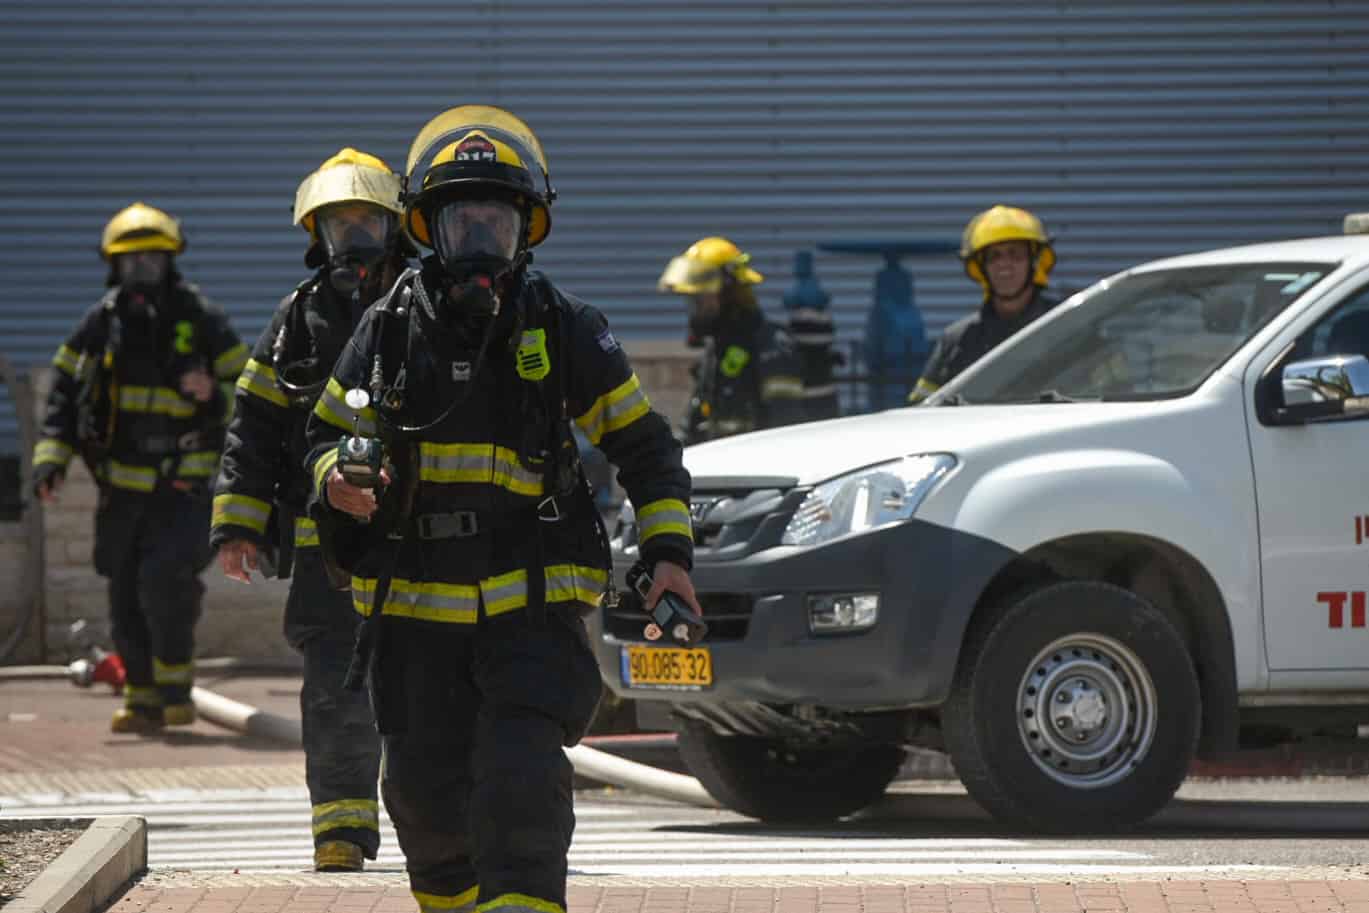 כוחות לוחמי אש ומשטרה בארוע דליפת האמונה בקניון בעכו ב-27 ביוני 2019 (צילום: מאיר ועקנין/פלאש90)